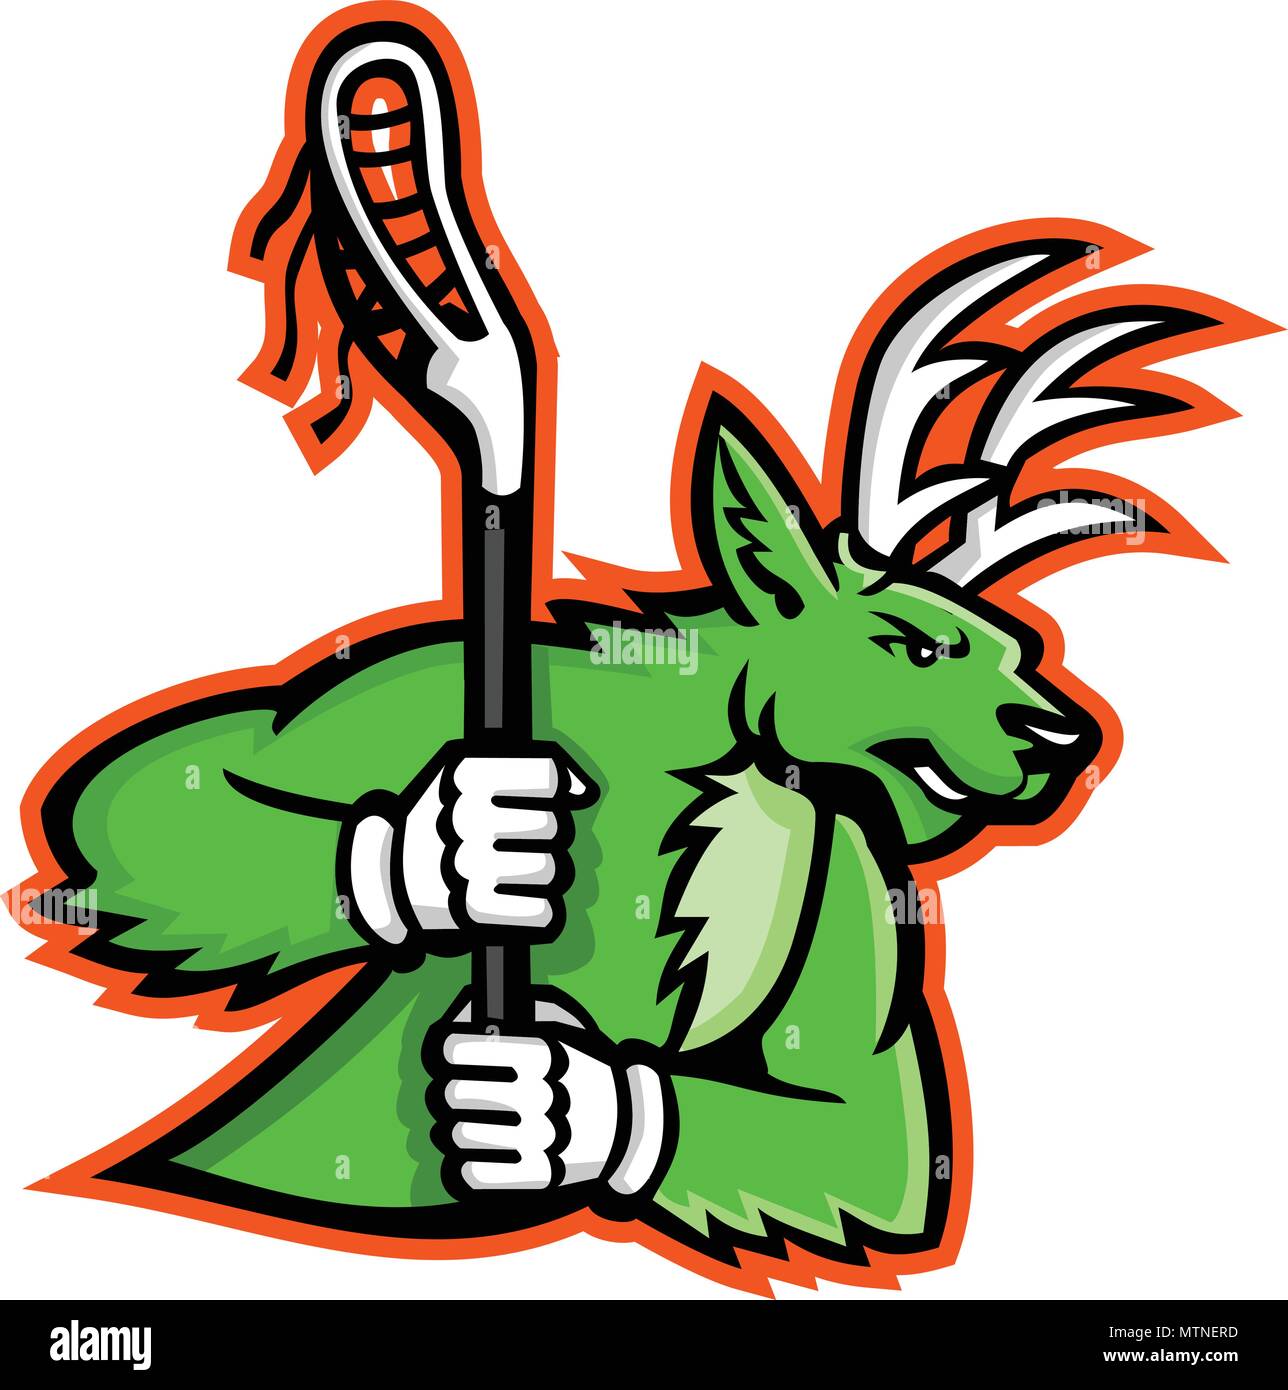 Icona di mascotte illustrazione di un Stag Cervo o buck wielding a lacrosse stick visto dal lato su sfondo isolato in stile retrò. Illustrazione Vettoriale